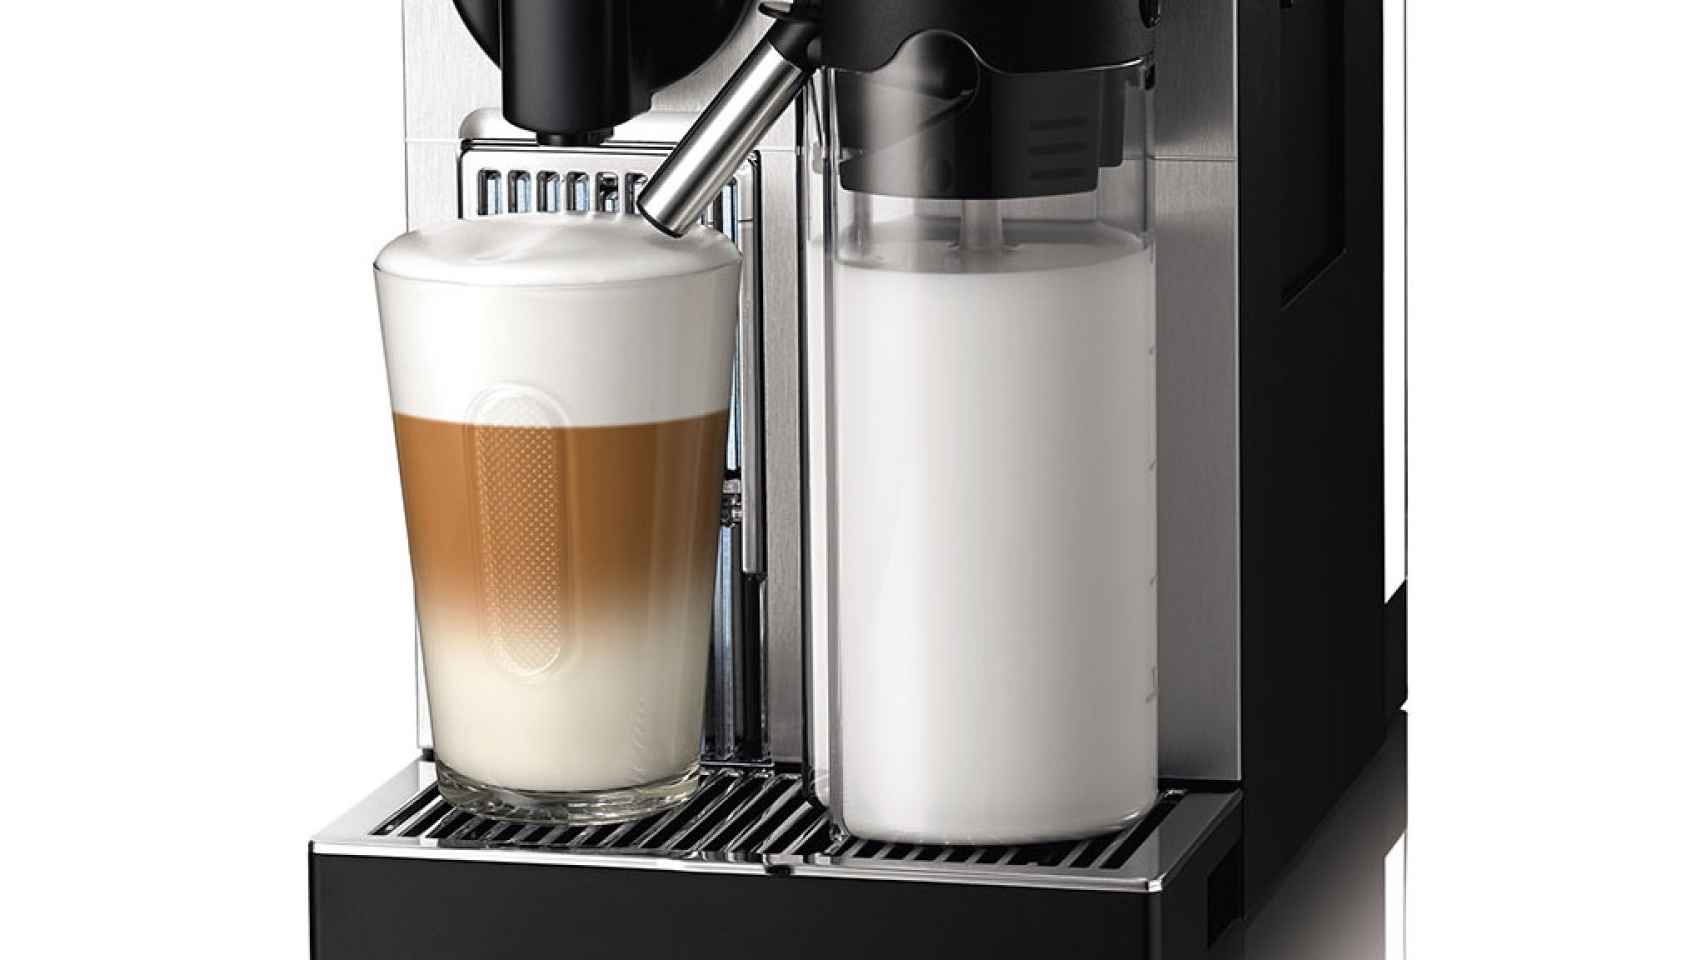 Residencia Embrión preferir Nespresso Lattissima+ Pro, nueva cafetera para el amante del café con leche